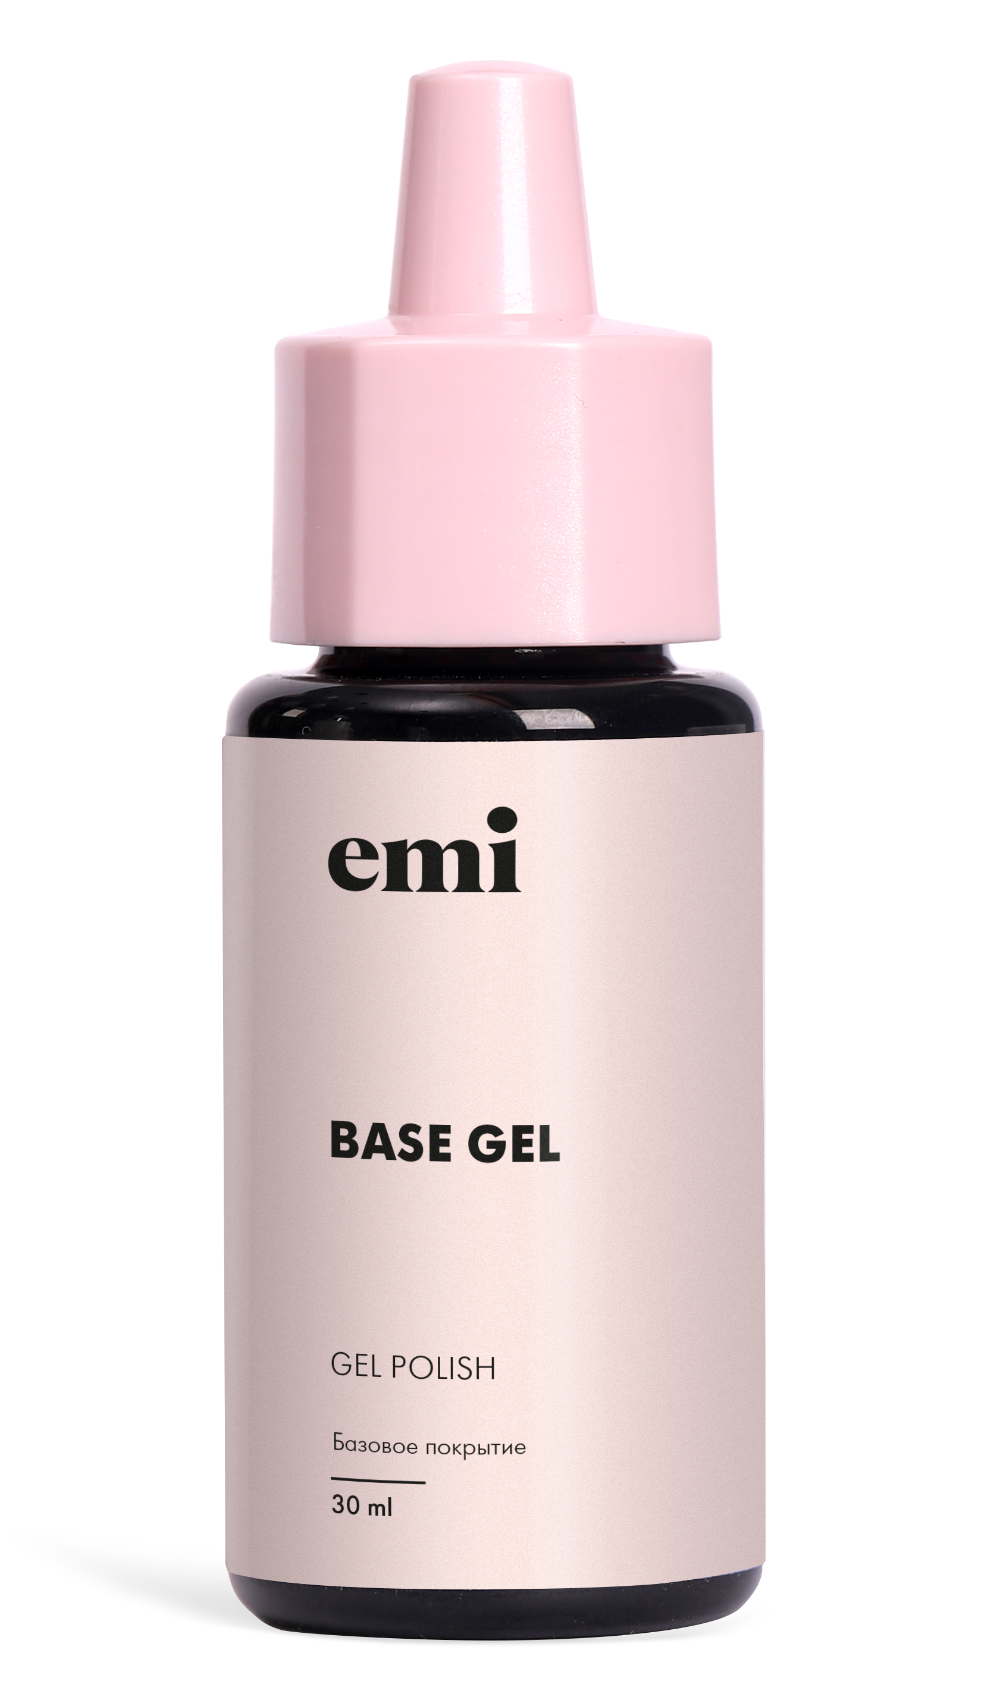 Базовое покрытие для ногтей Emi Base gel 30 мл эластичное базовое покрытие ледяной розовый elastic base coat ice pink